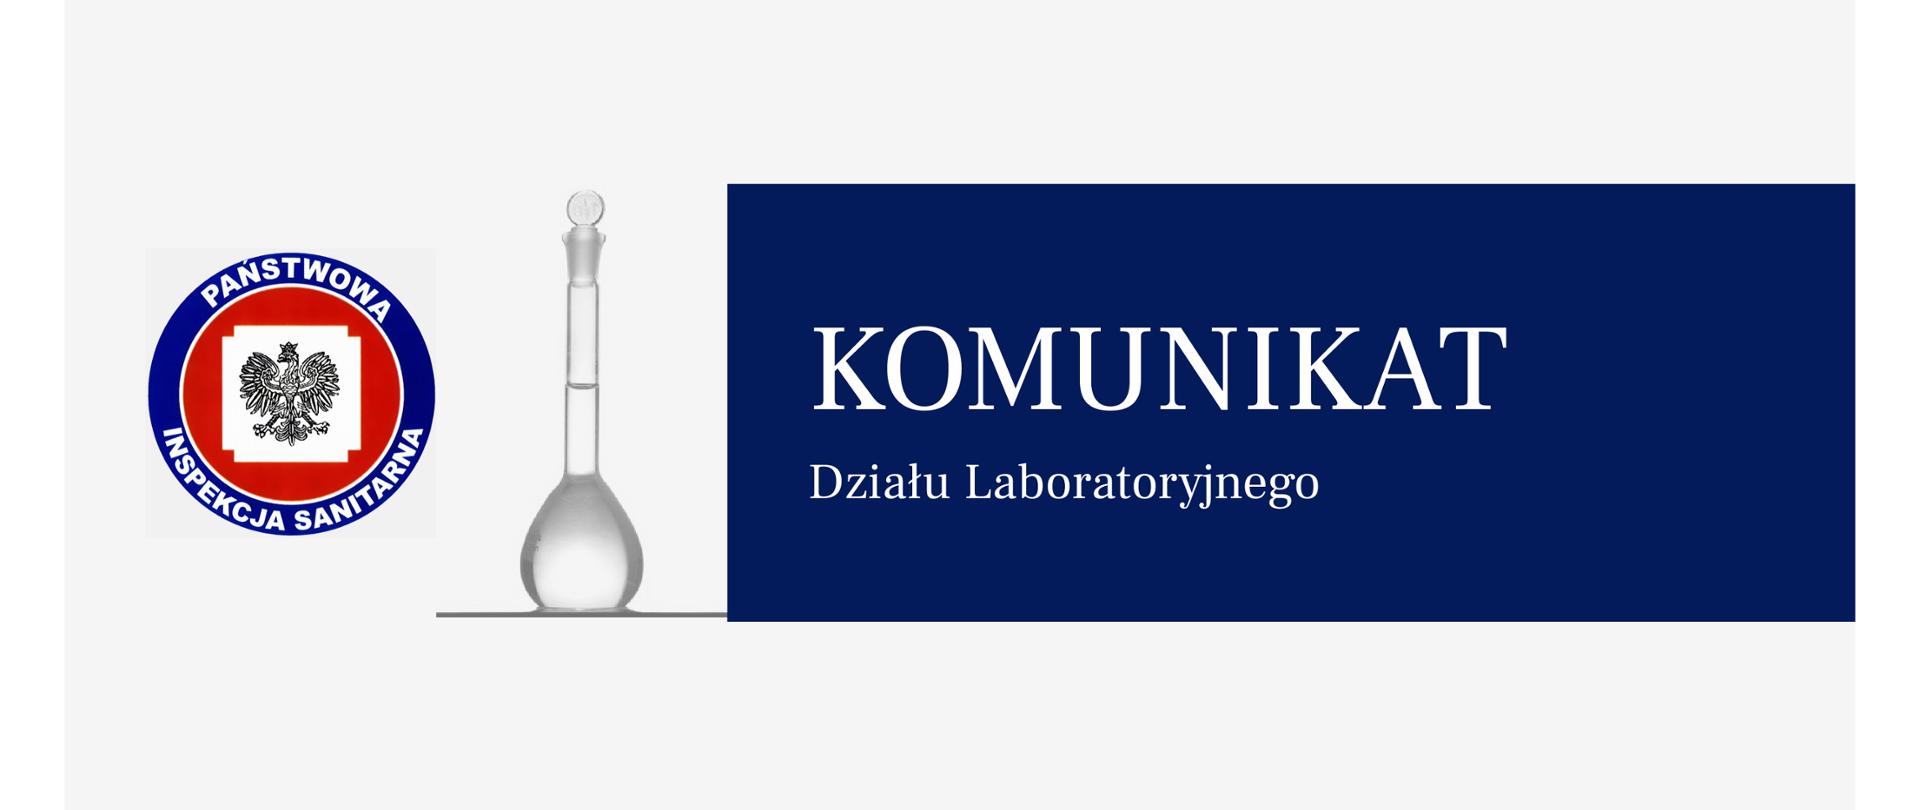 logo Państwowej Inspekcji Sanitarnej, szkło laboratoryjne z tekstem Komunikat Działu Laboratoryjnego